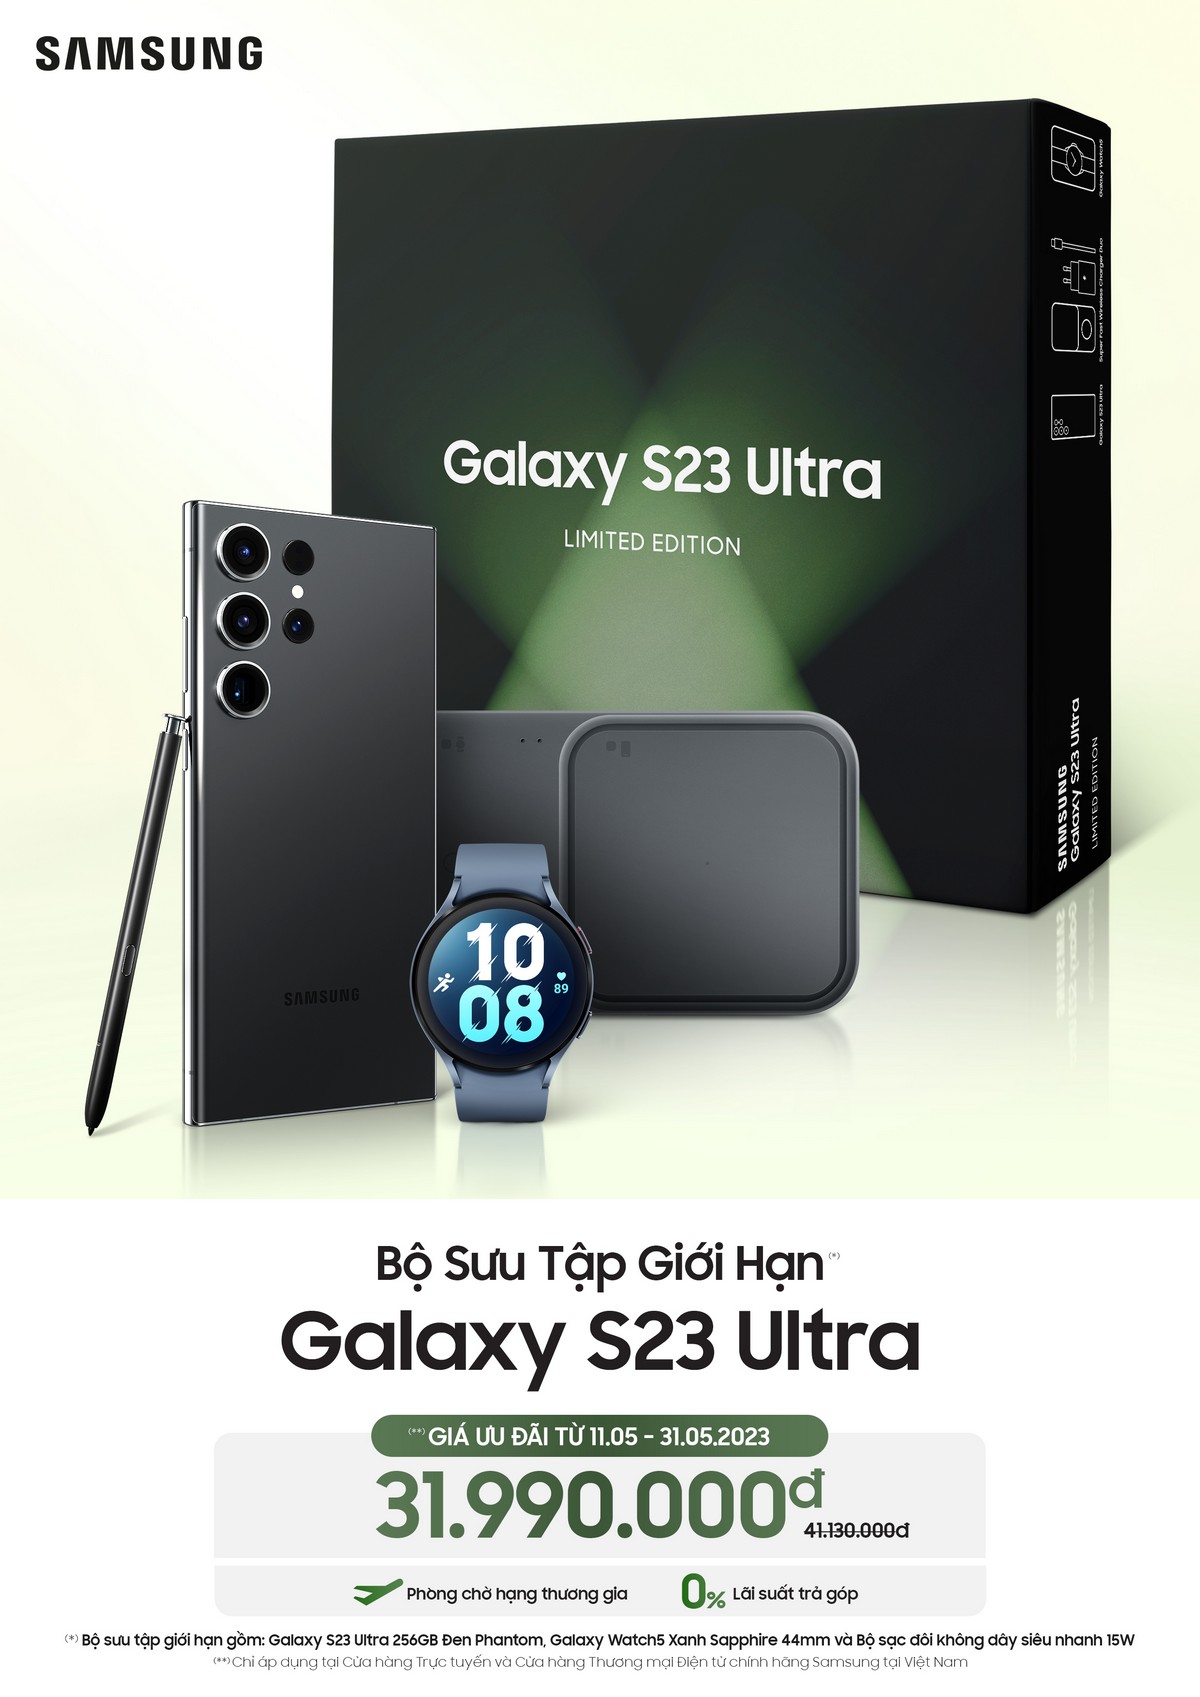 Bộ sưu tập Galaxy S23 Ultra đặc biệt của Samsung ra mắt